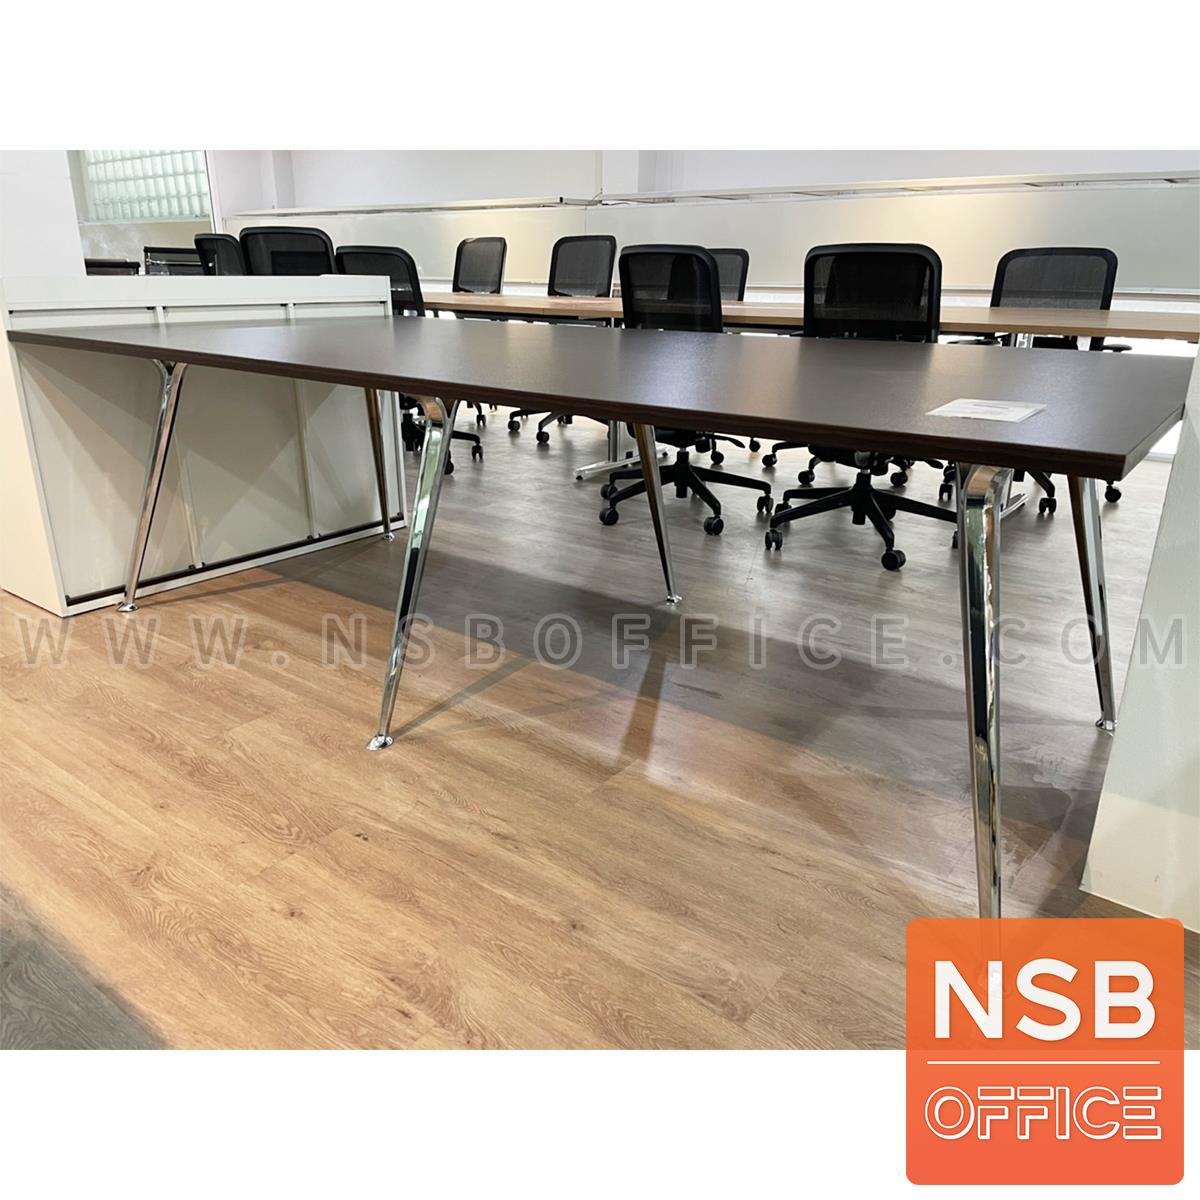 โต๊ะประชุมทรงสี่เหลี่ยม  รุ่น Bronze (บรอนซ์) ขนาด 240W*120D cm. ขาอลูมิเนียม